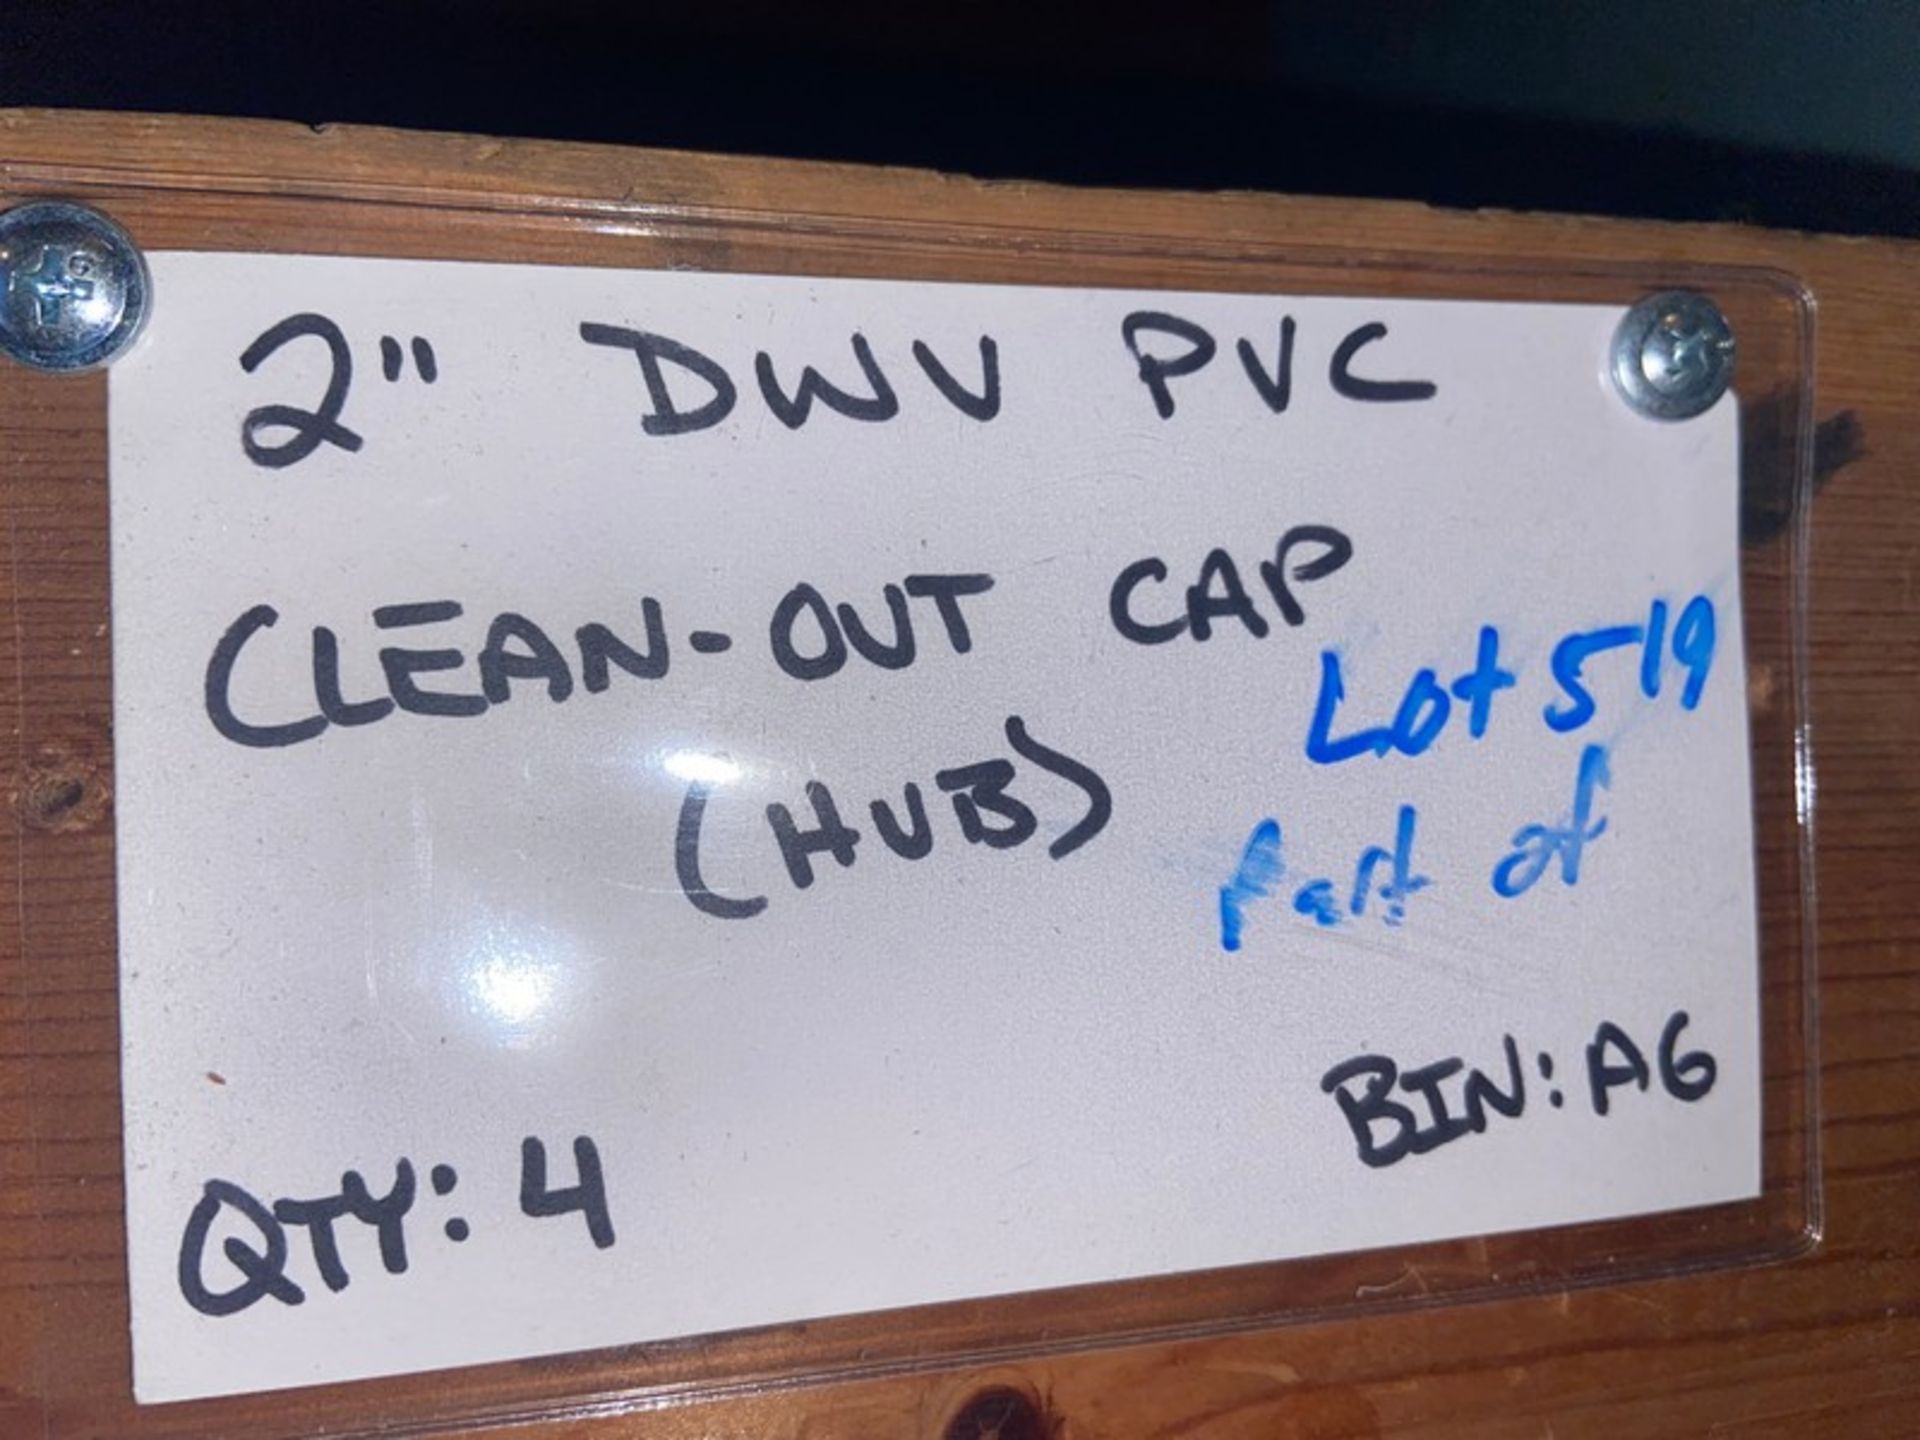 (29) 2” DWV PVC Clean out cap (STREET) (Bin:A6), Includes (4) 2” DWV PVC Clean-out Cap (HUB) (Bin: - Bild 10 aus 11